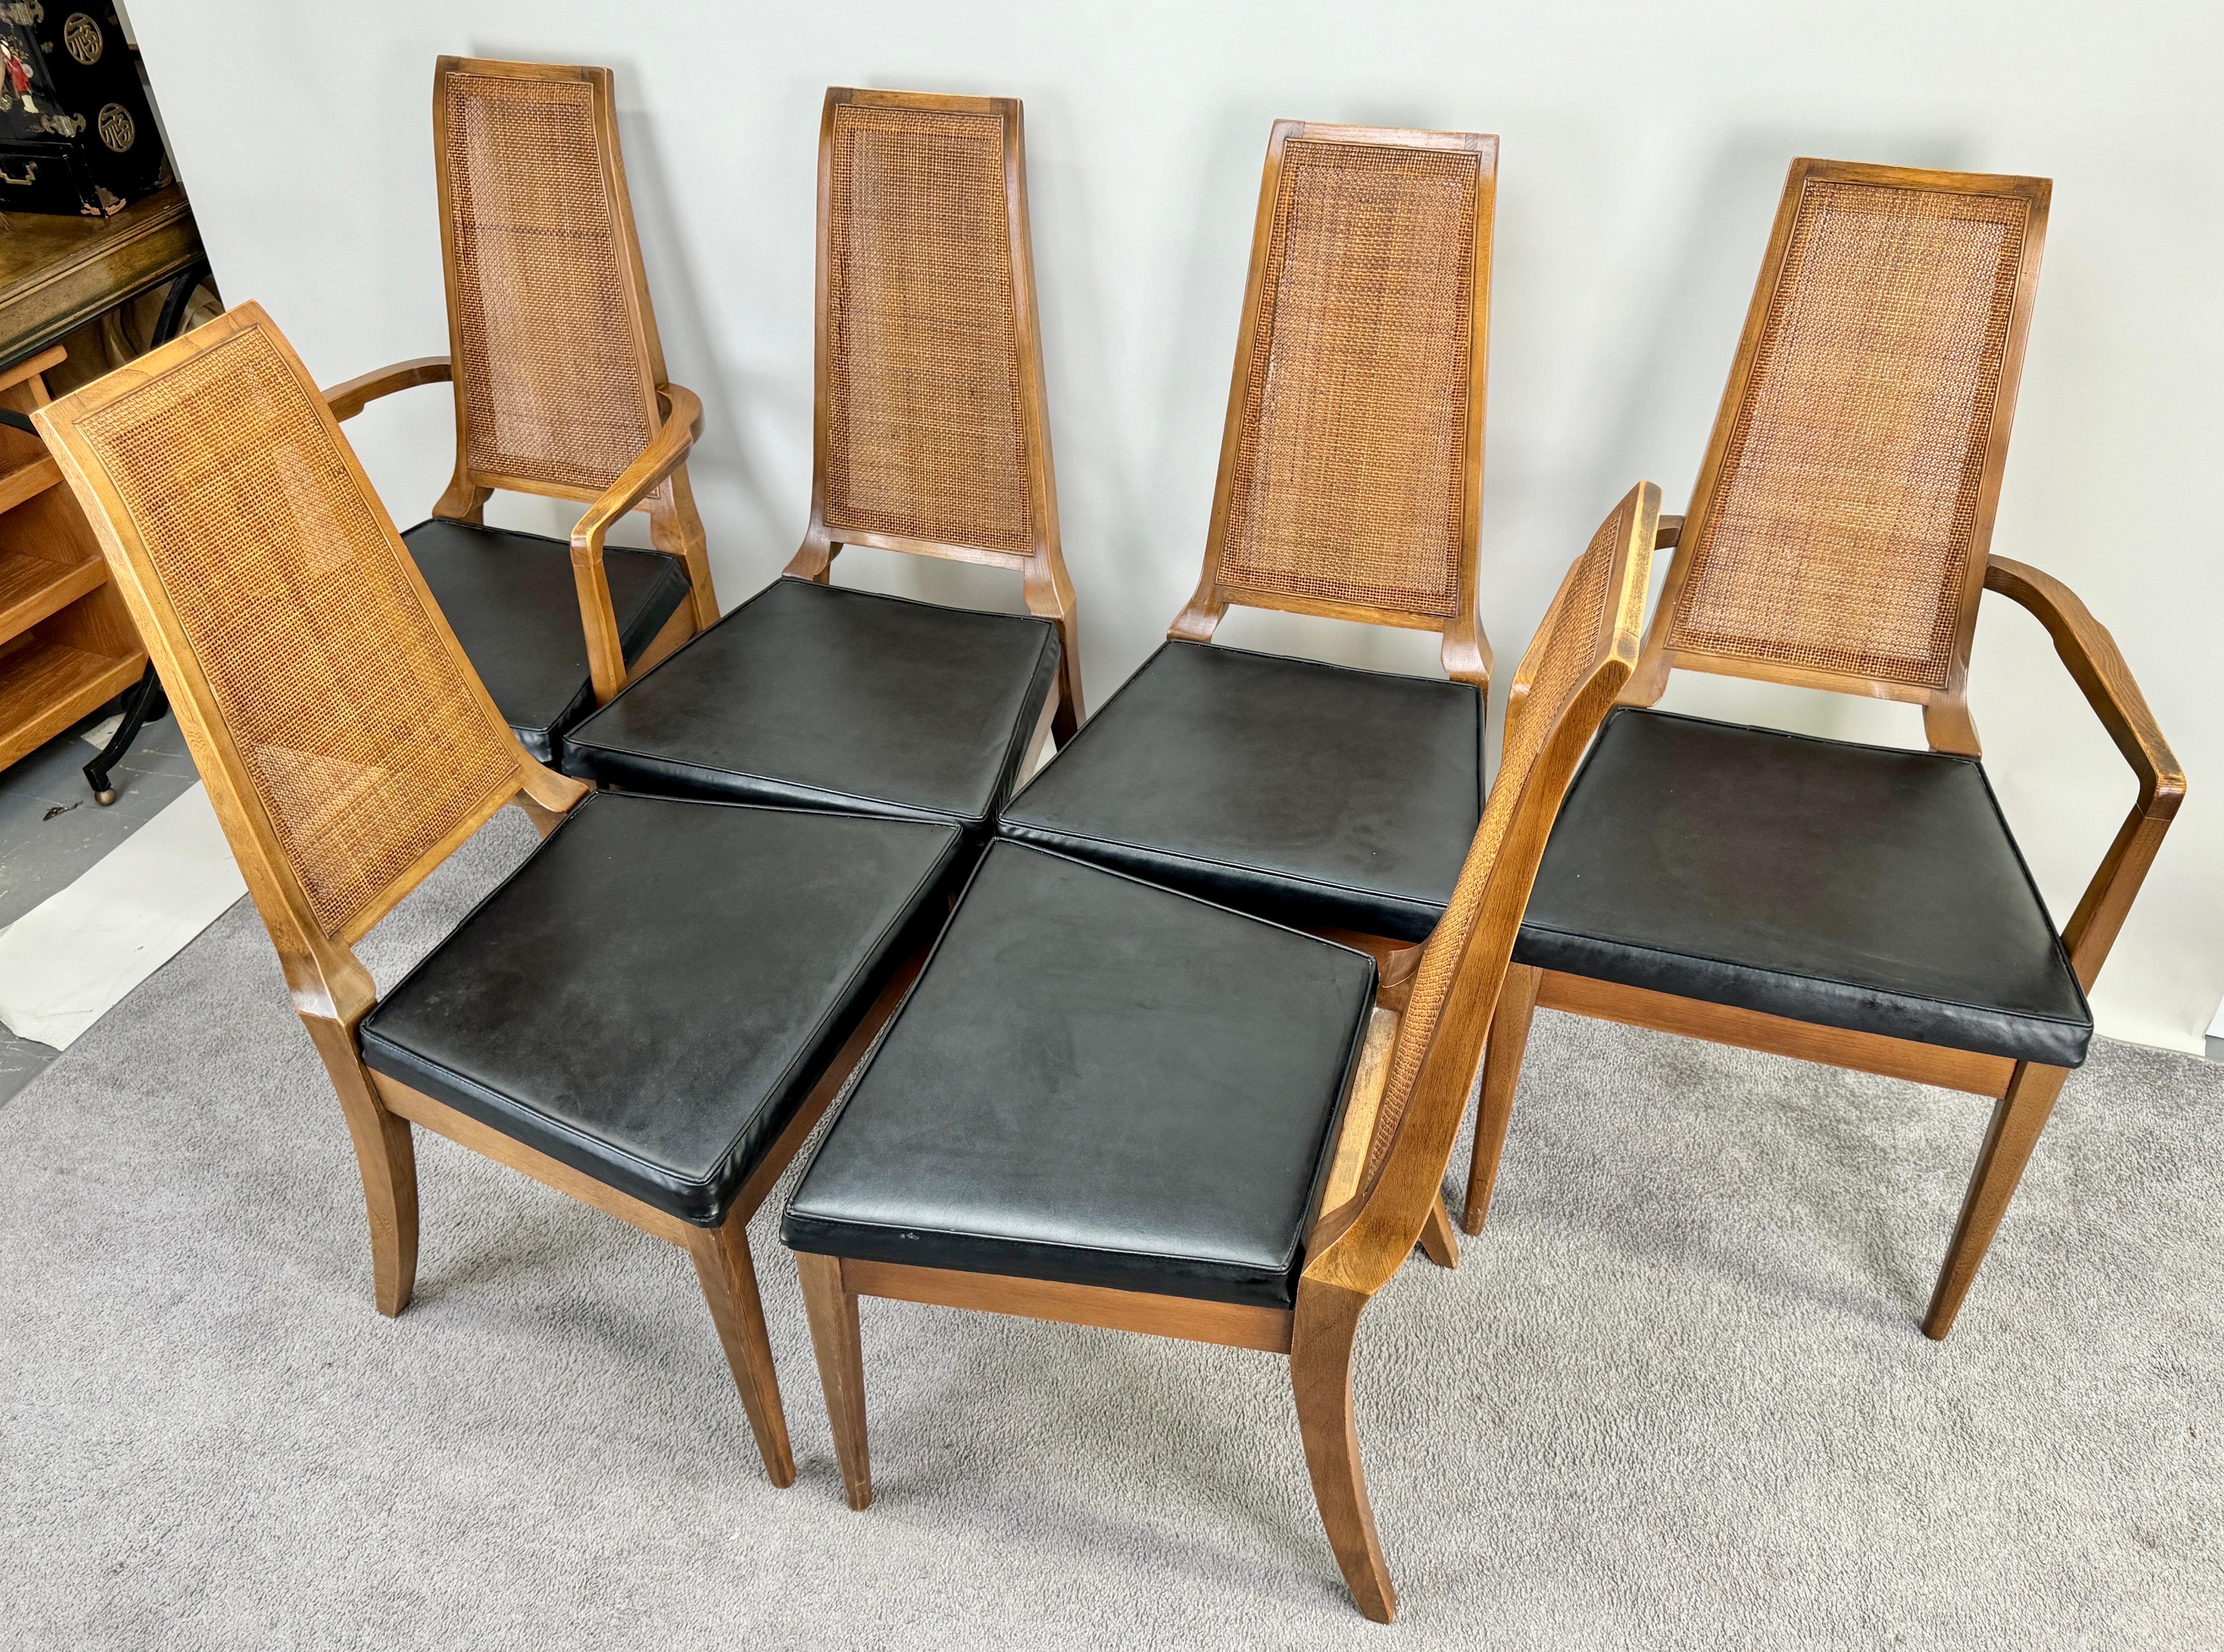 Ein Satz von sechs Mid Century Modern Esszimmerstühlen, ein Zeugnis für die raffinierte Handwerkskunst der American Furniture Co of Martinsville, VA. Diese Kollektion besteht aus zwei anmutigen Sesseln und vier ebenso eleganten normalen Stühlen, die